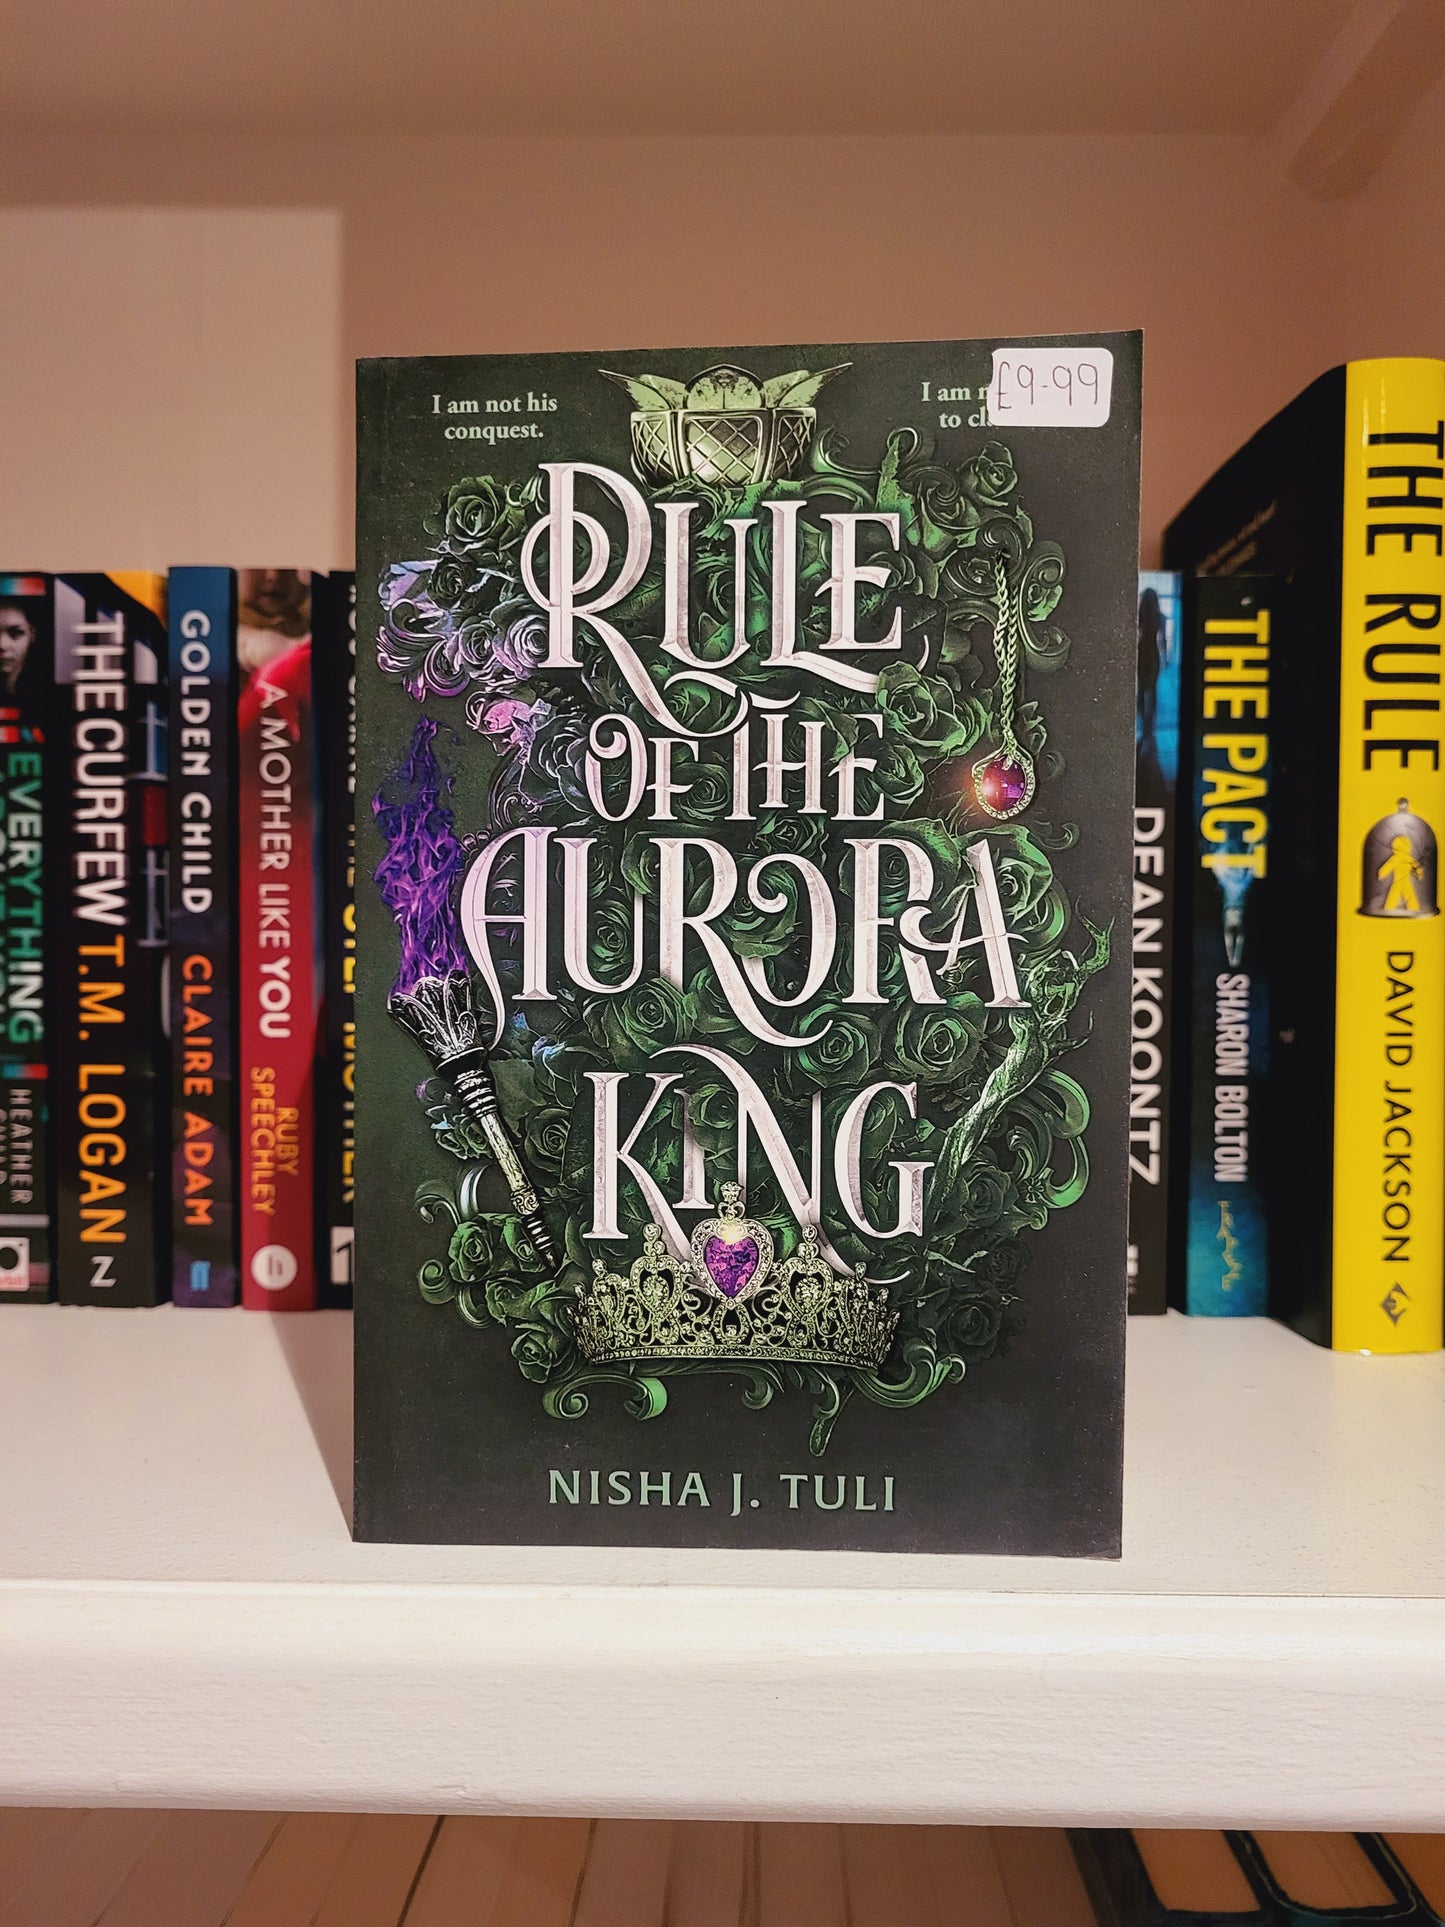 Rule of the Aurora King - Nisha J. Tuli